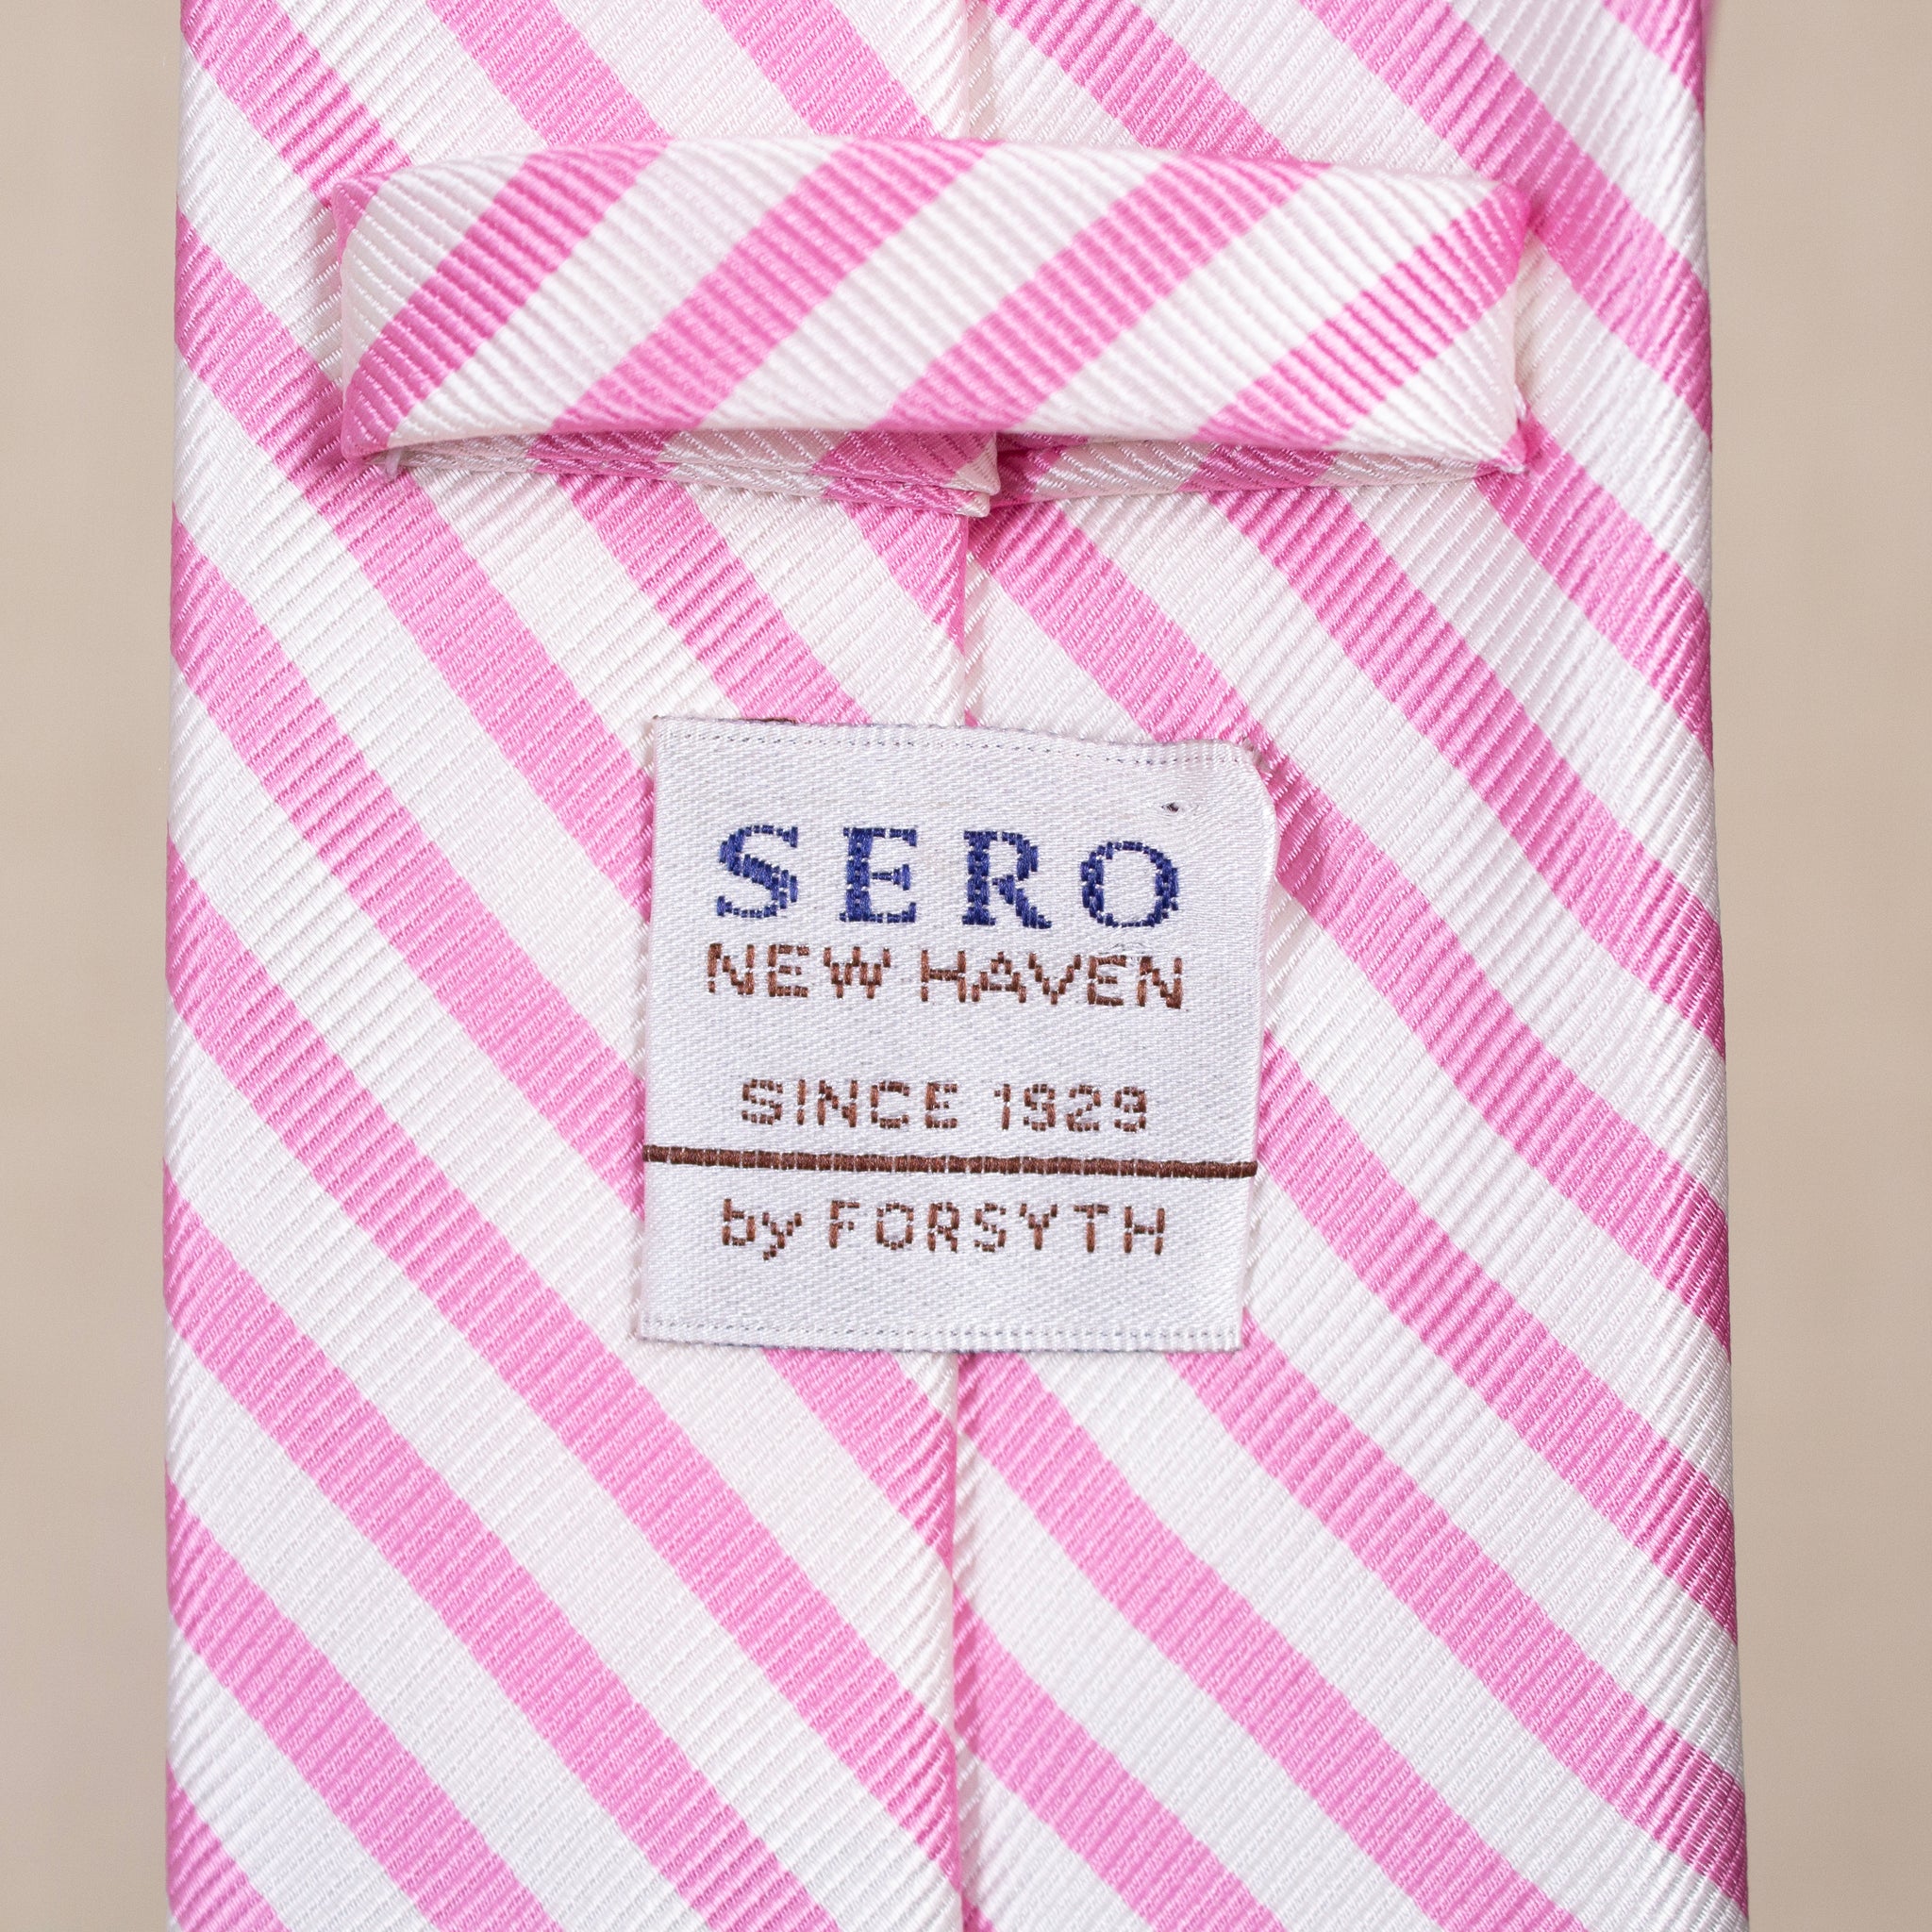 Sero of New Haven Striped Tie